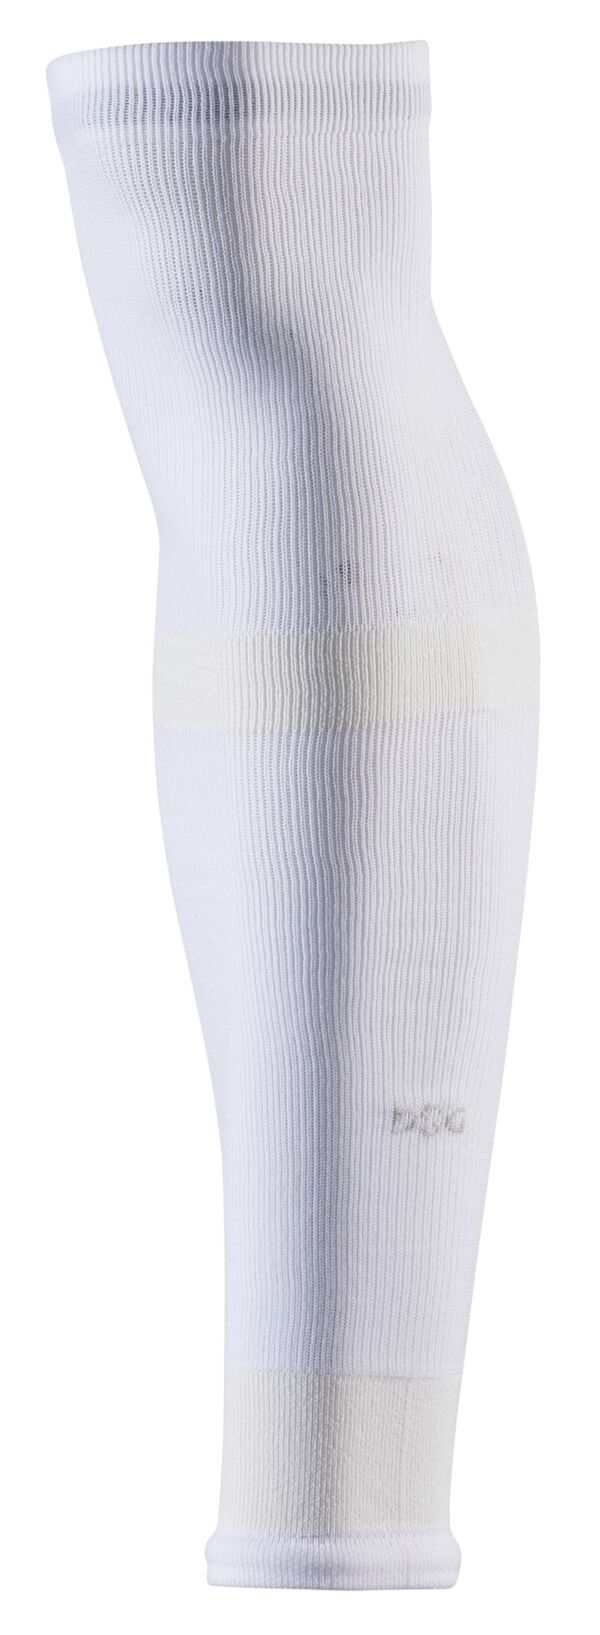 yz DSG fB[X C A_[EFA DSG Adult Soccer Leg Sleeve 2 Pack White